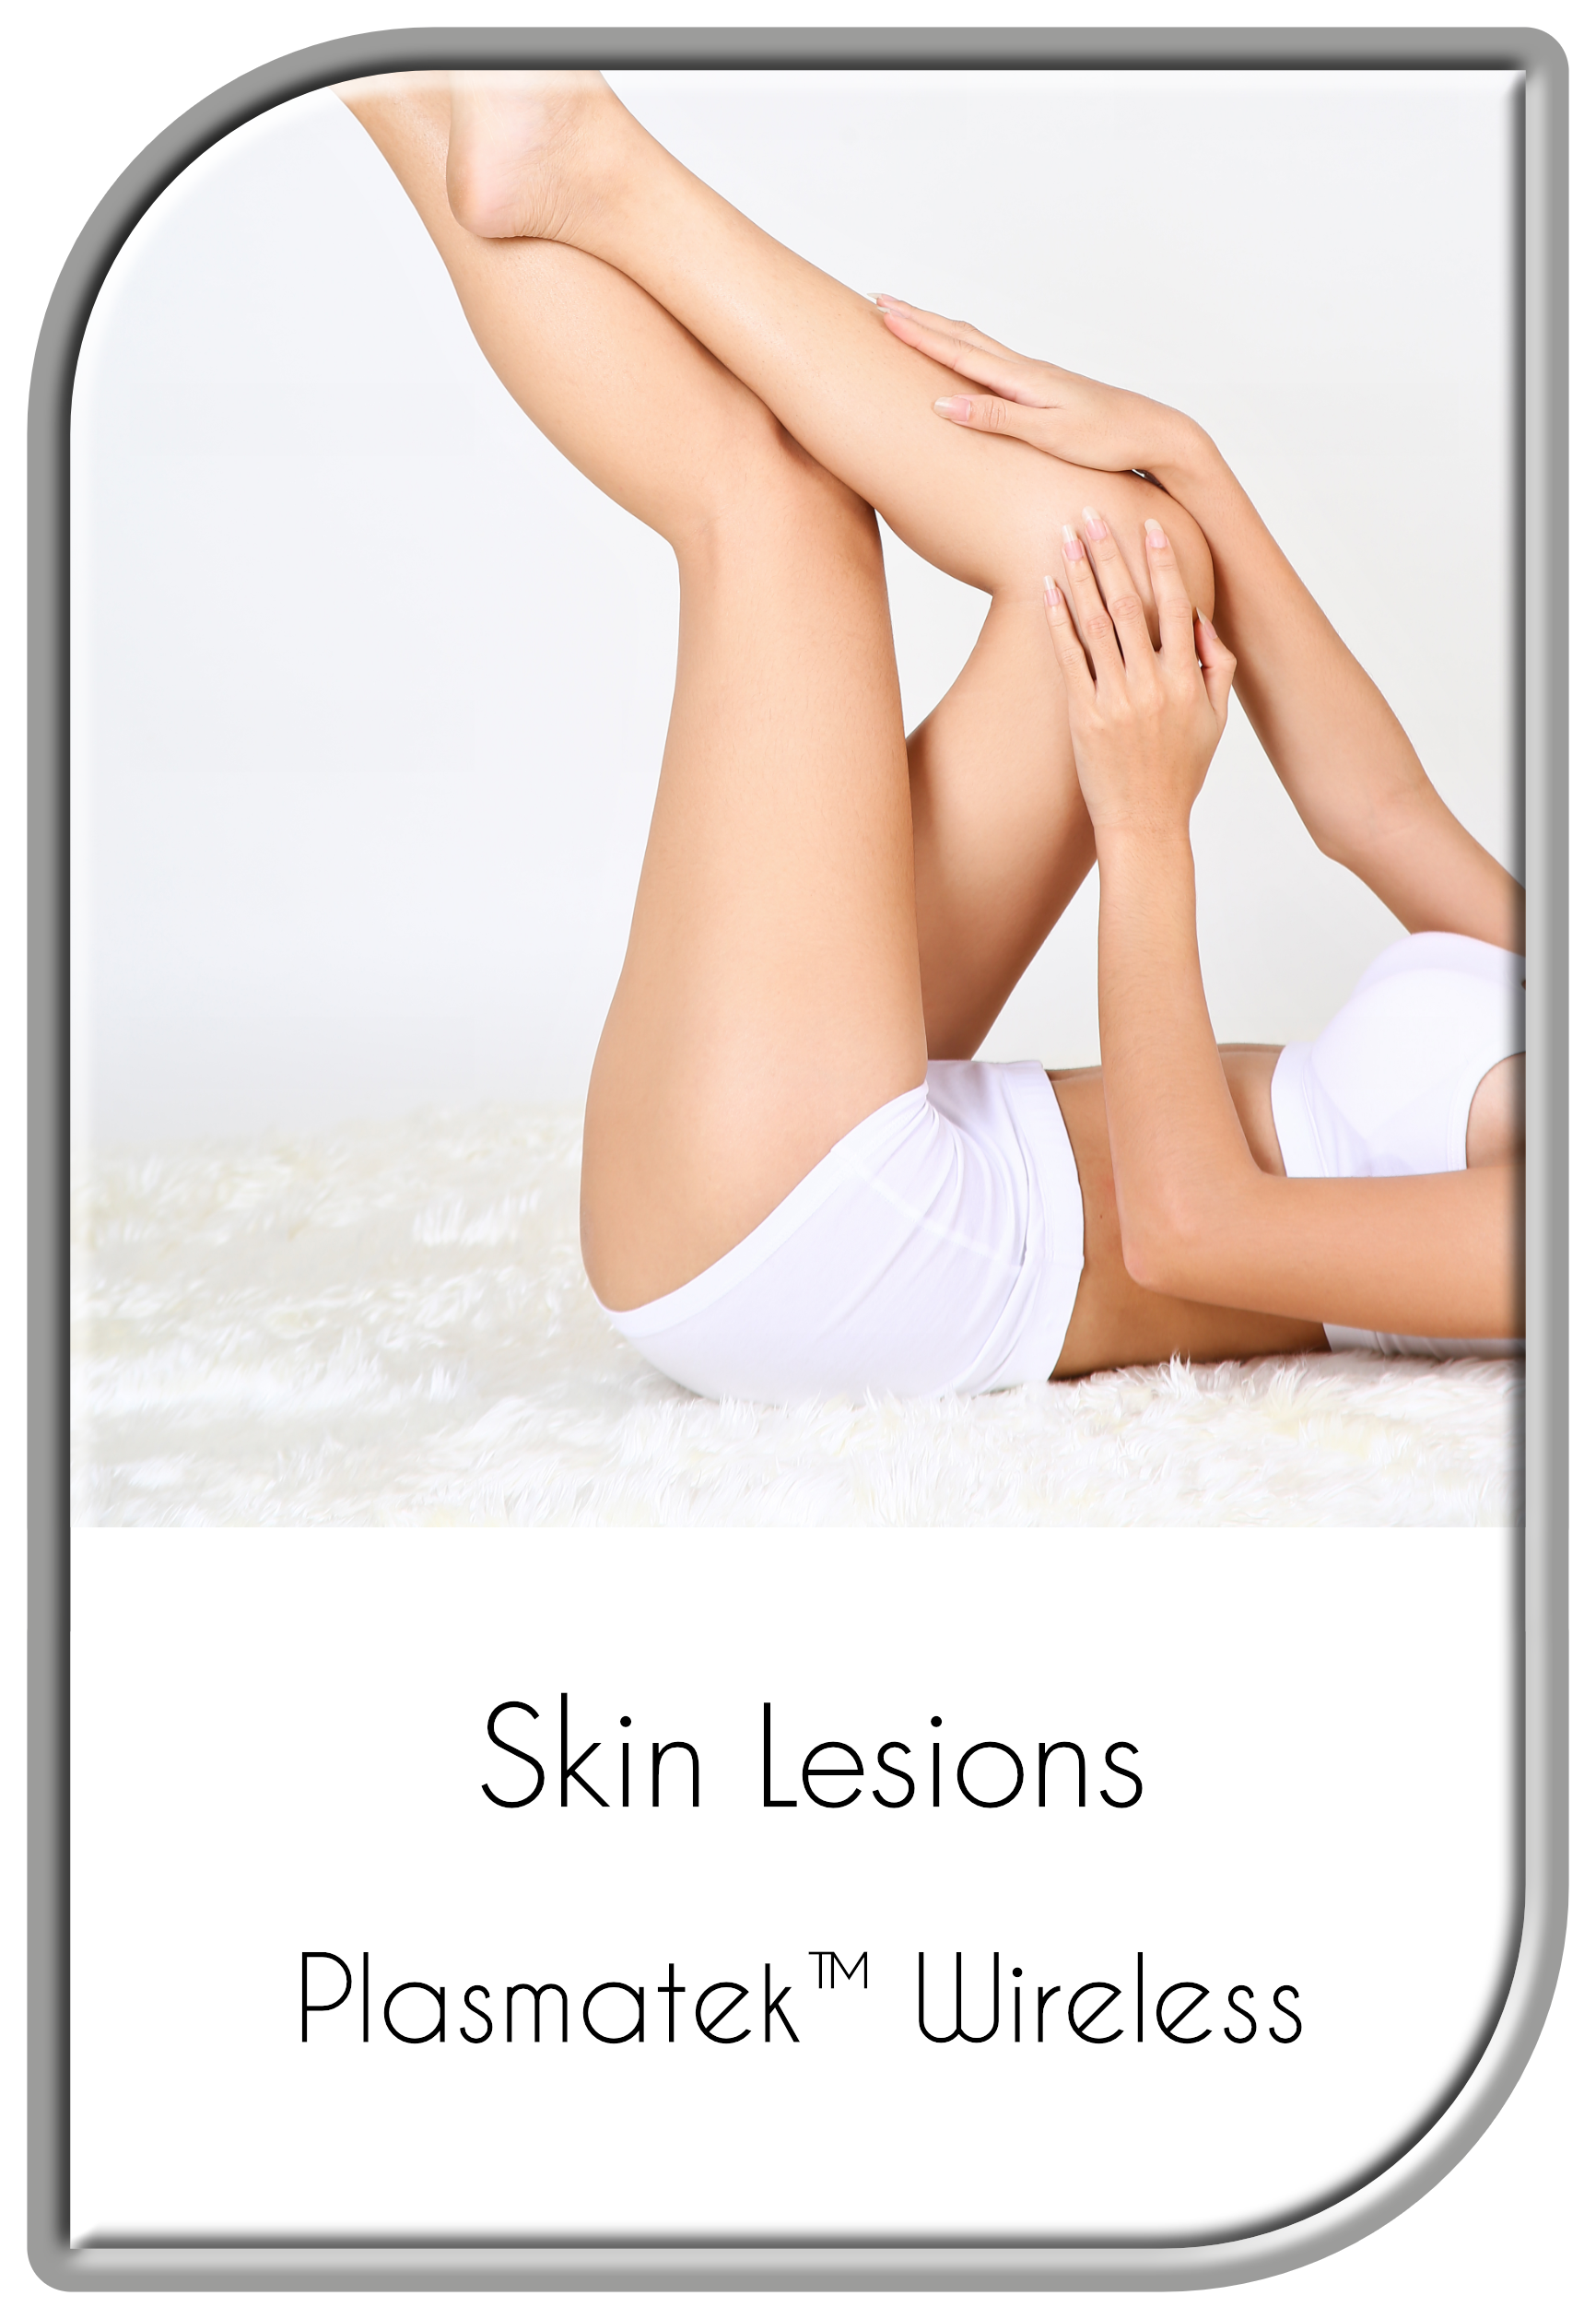 Plasmatek™ Wireless for Skin Lesions